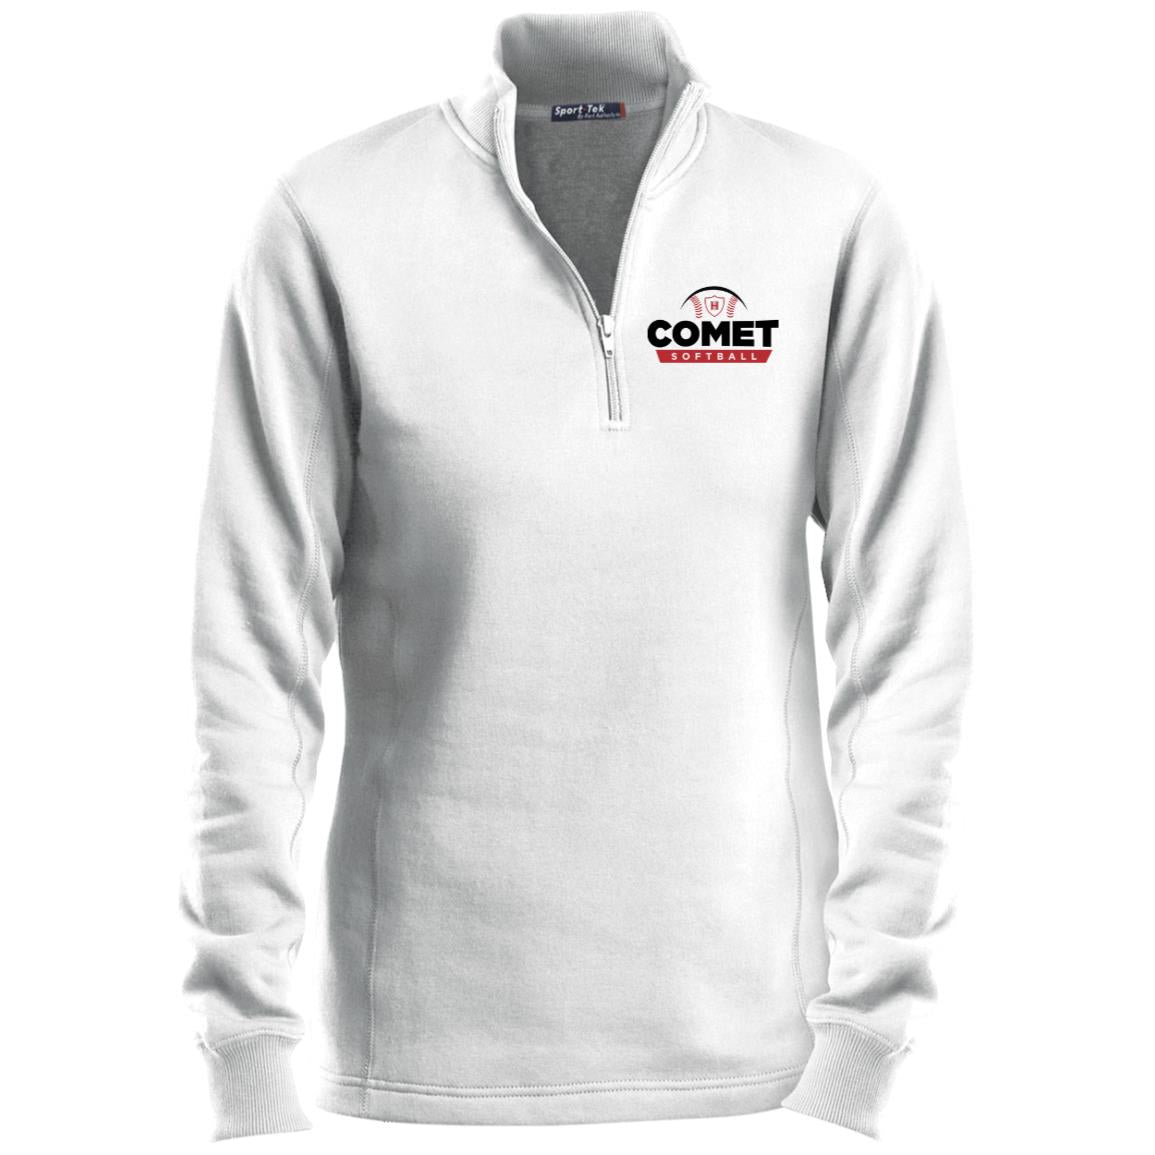 Comet Softball - Ladies 1/4 Zip Sweatshirt